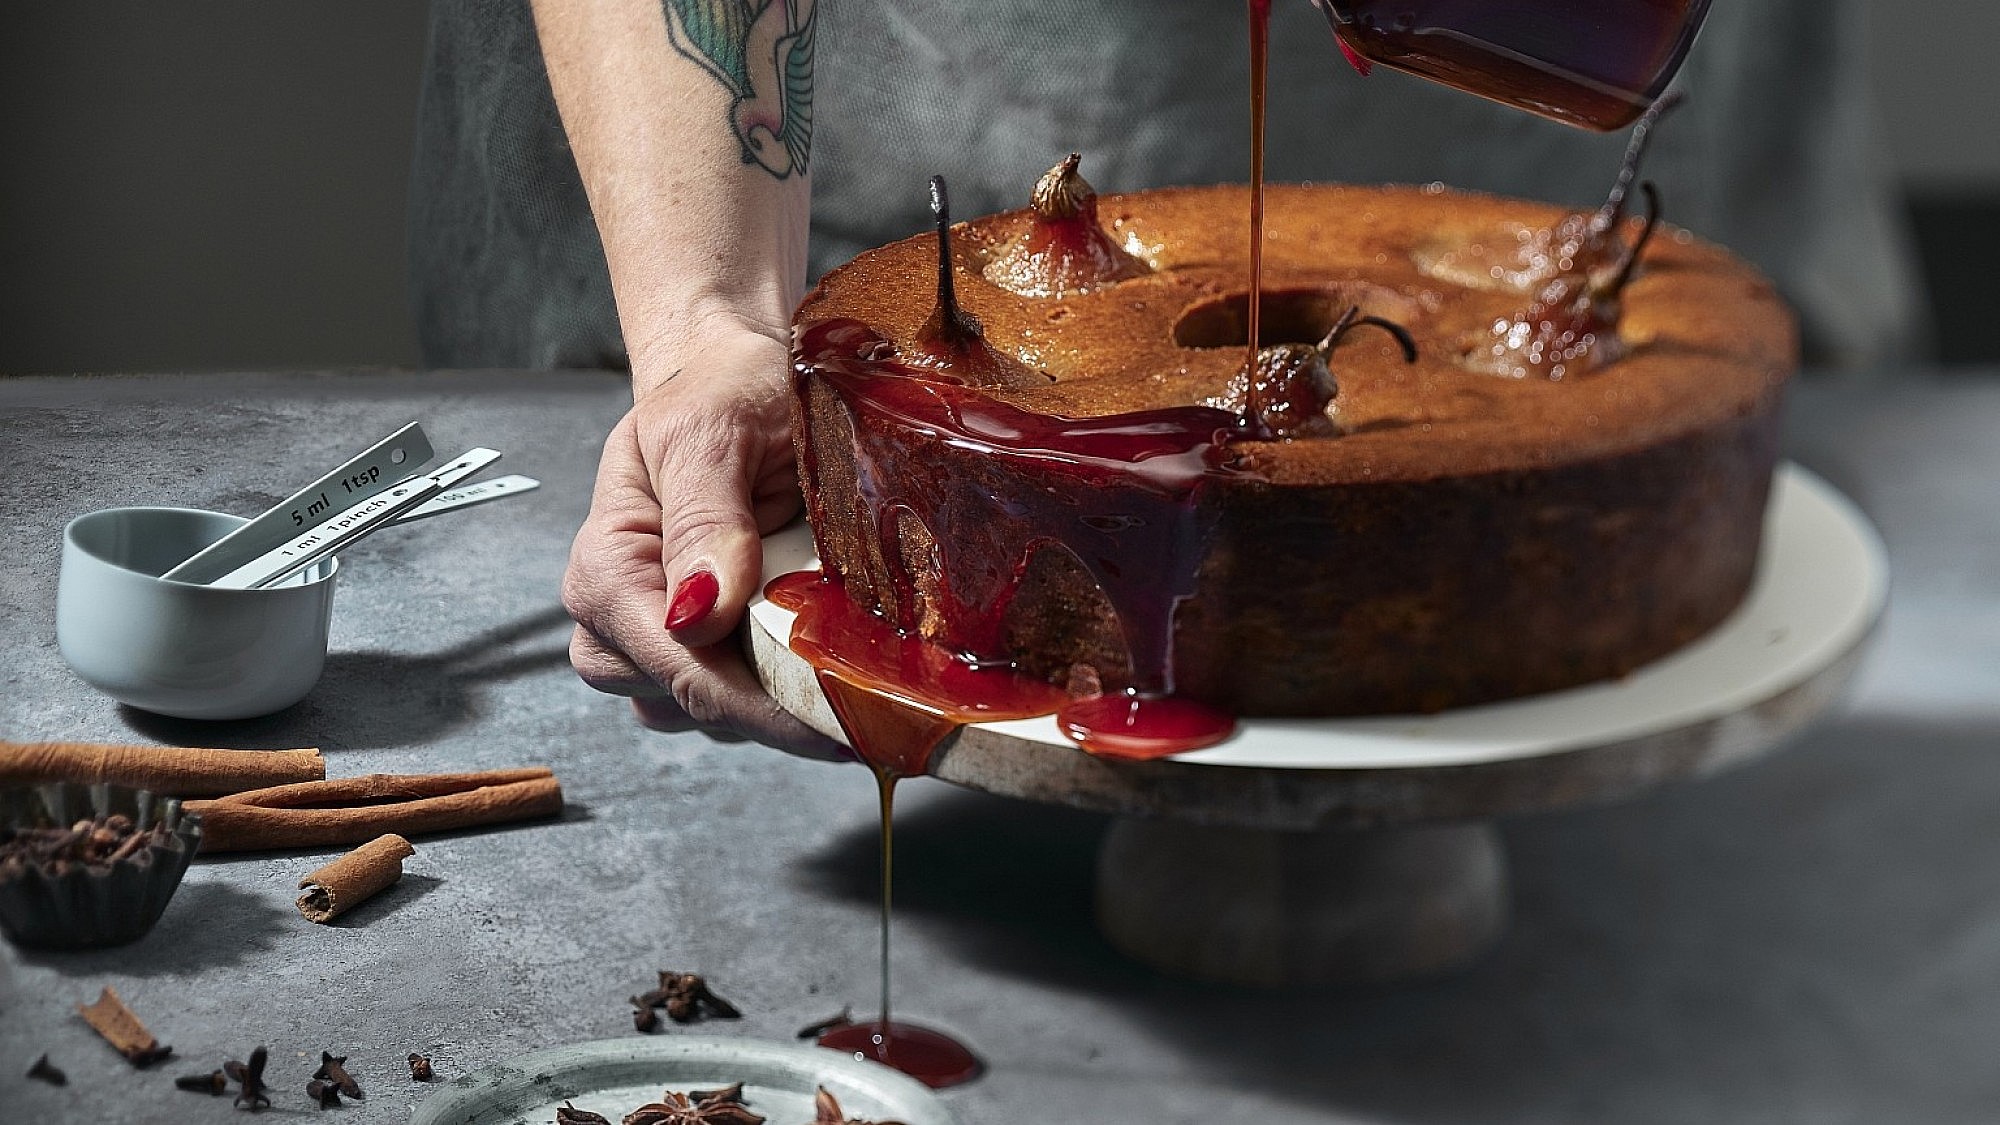 עוגת תמרים, אגסים ותבלינים טבעונית של שף-קונדיטורית נעמה שטייר. צילום: אנטולי מיכאלו. סטיילינג: ענת לבל